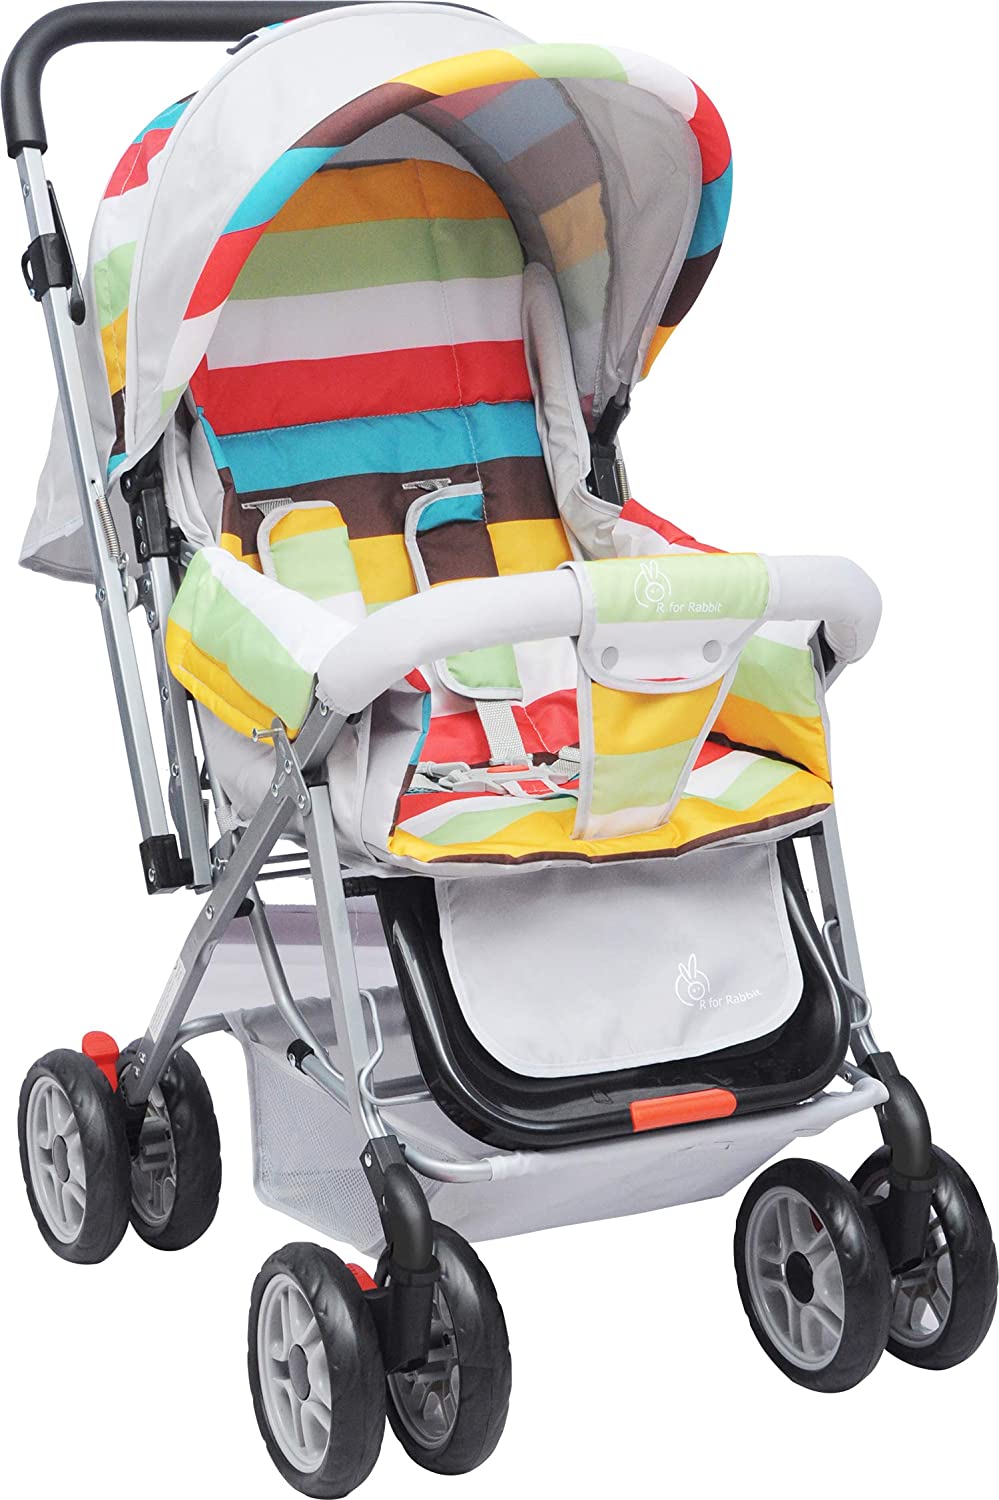 Best-Baby-Stroller-and-Pram-for|Kids|Infants|New-Born-...